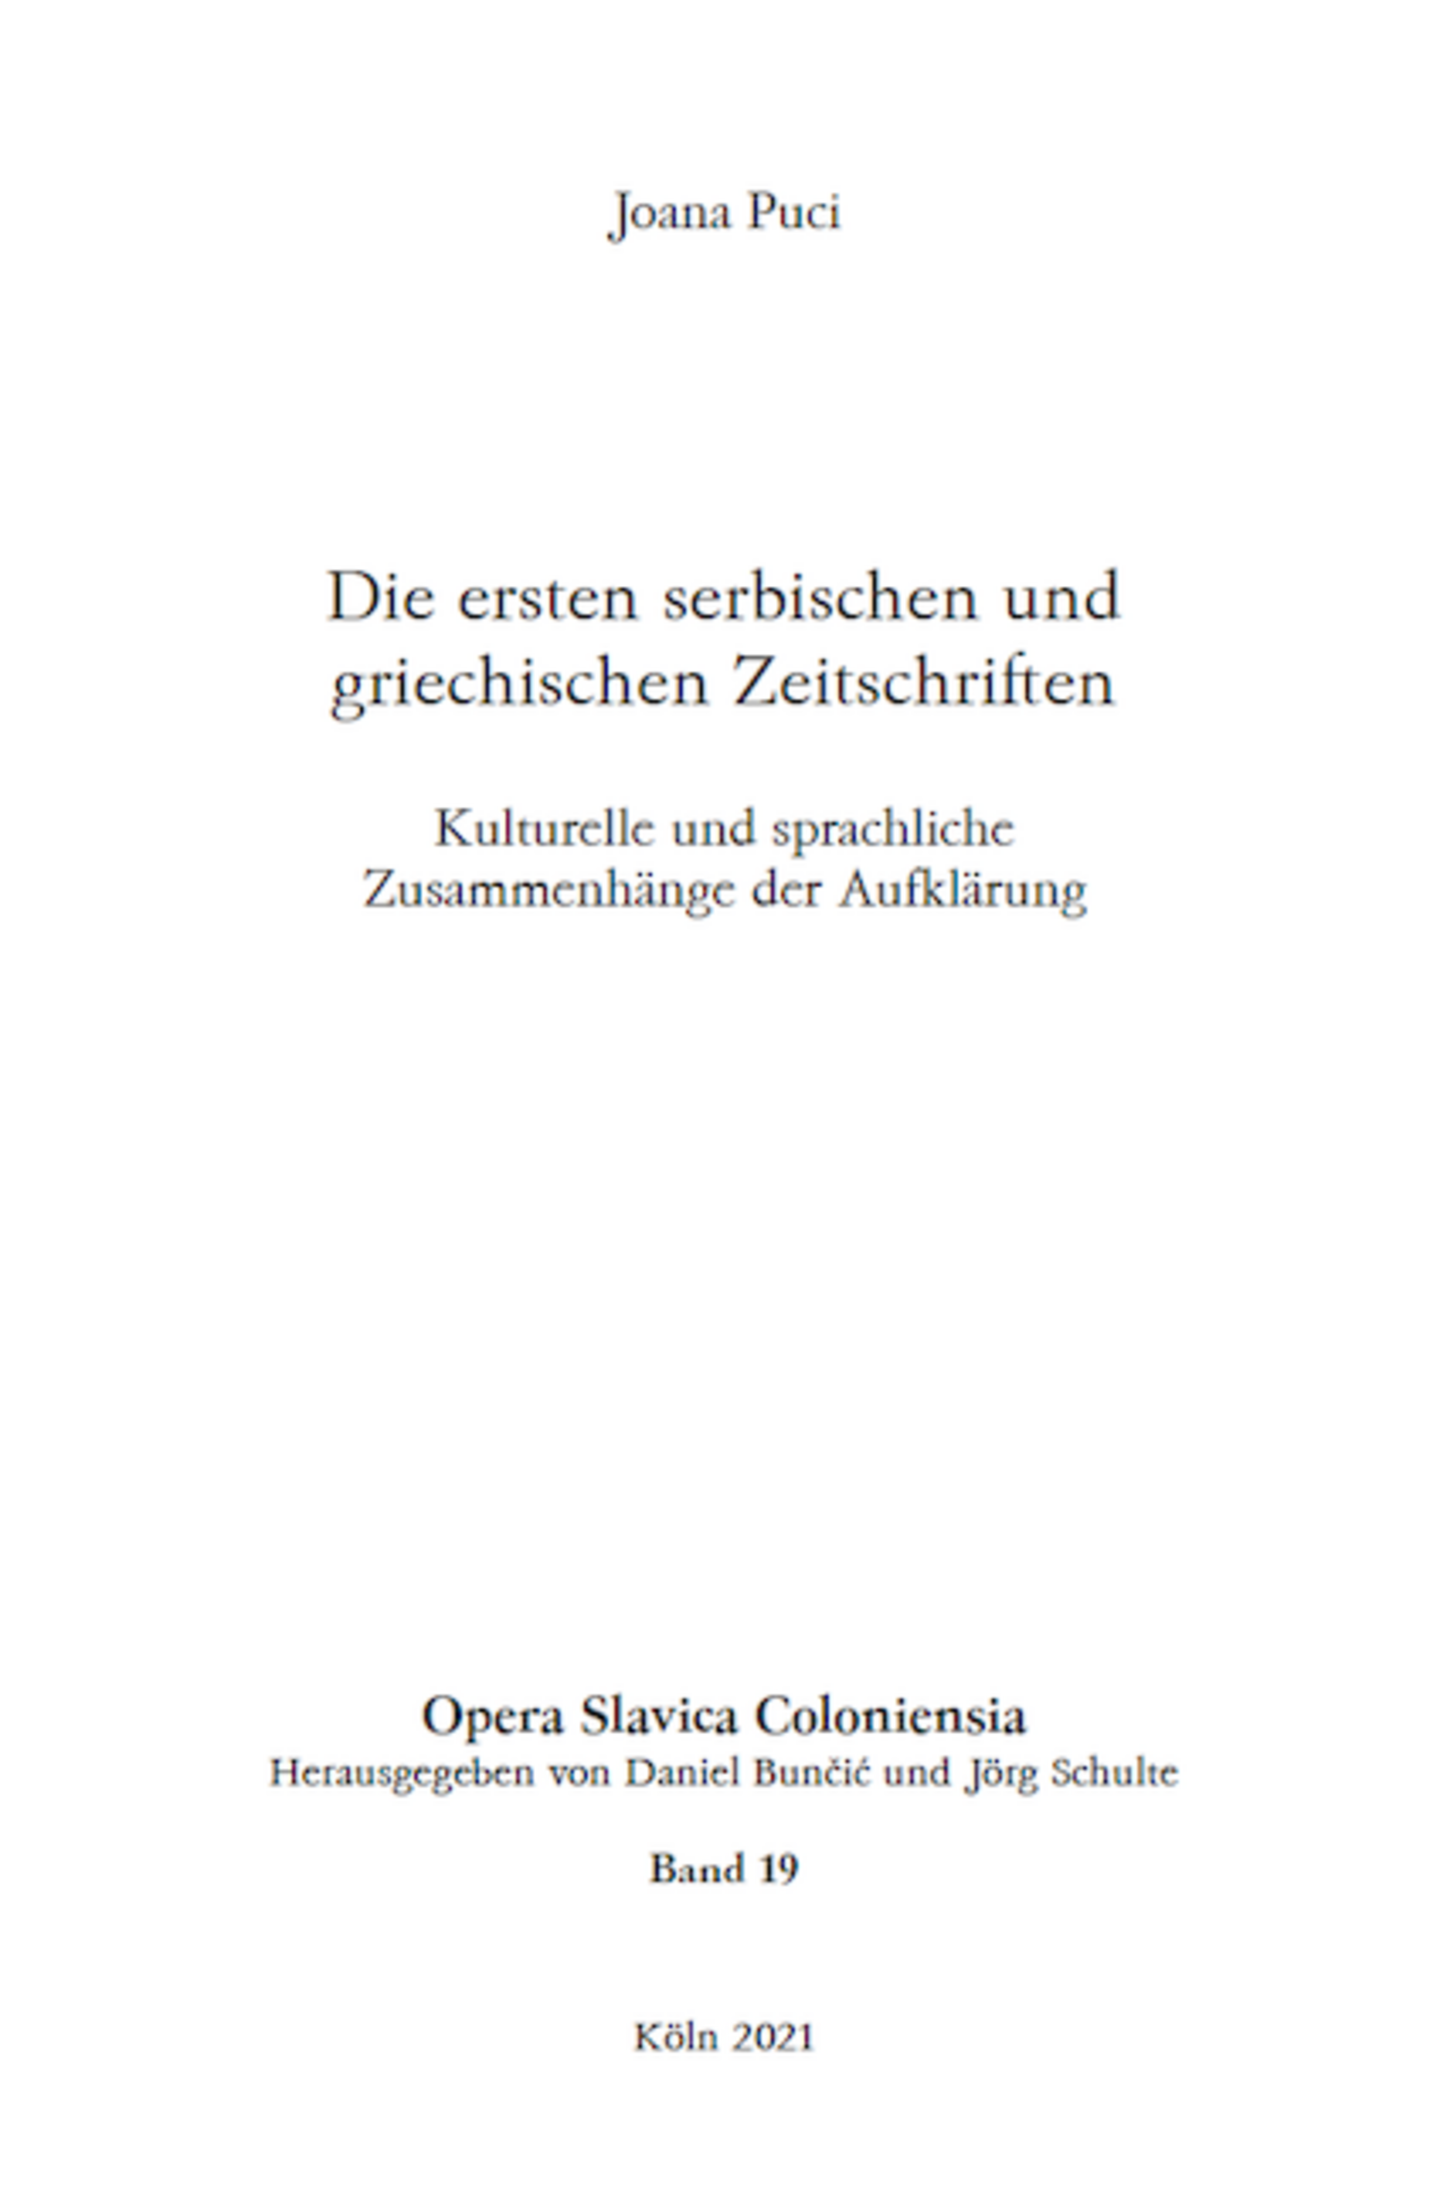 Opera Slavica Coloniensia, Bd. 19: Joana Puci (2021) Die ersten serbischen und griechischen Zeitschriften Kulturelle und sprachliche Zusammenhänge der Aufklärung